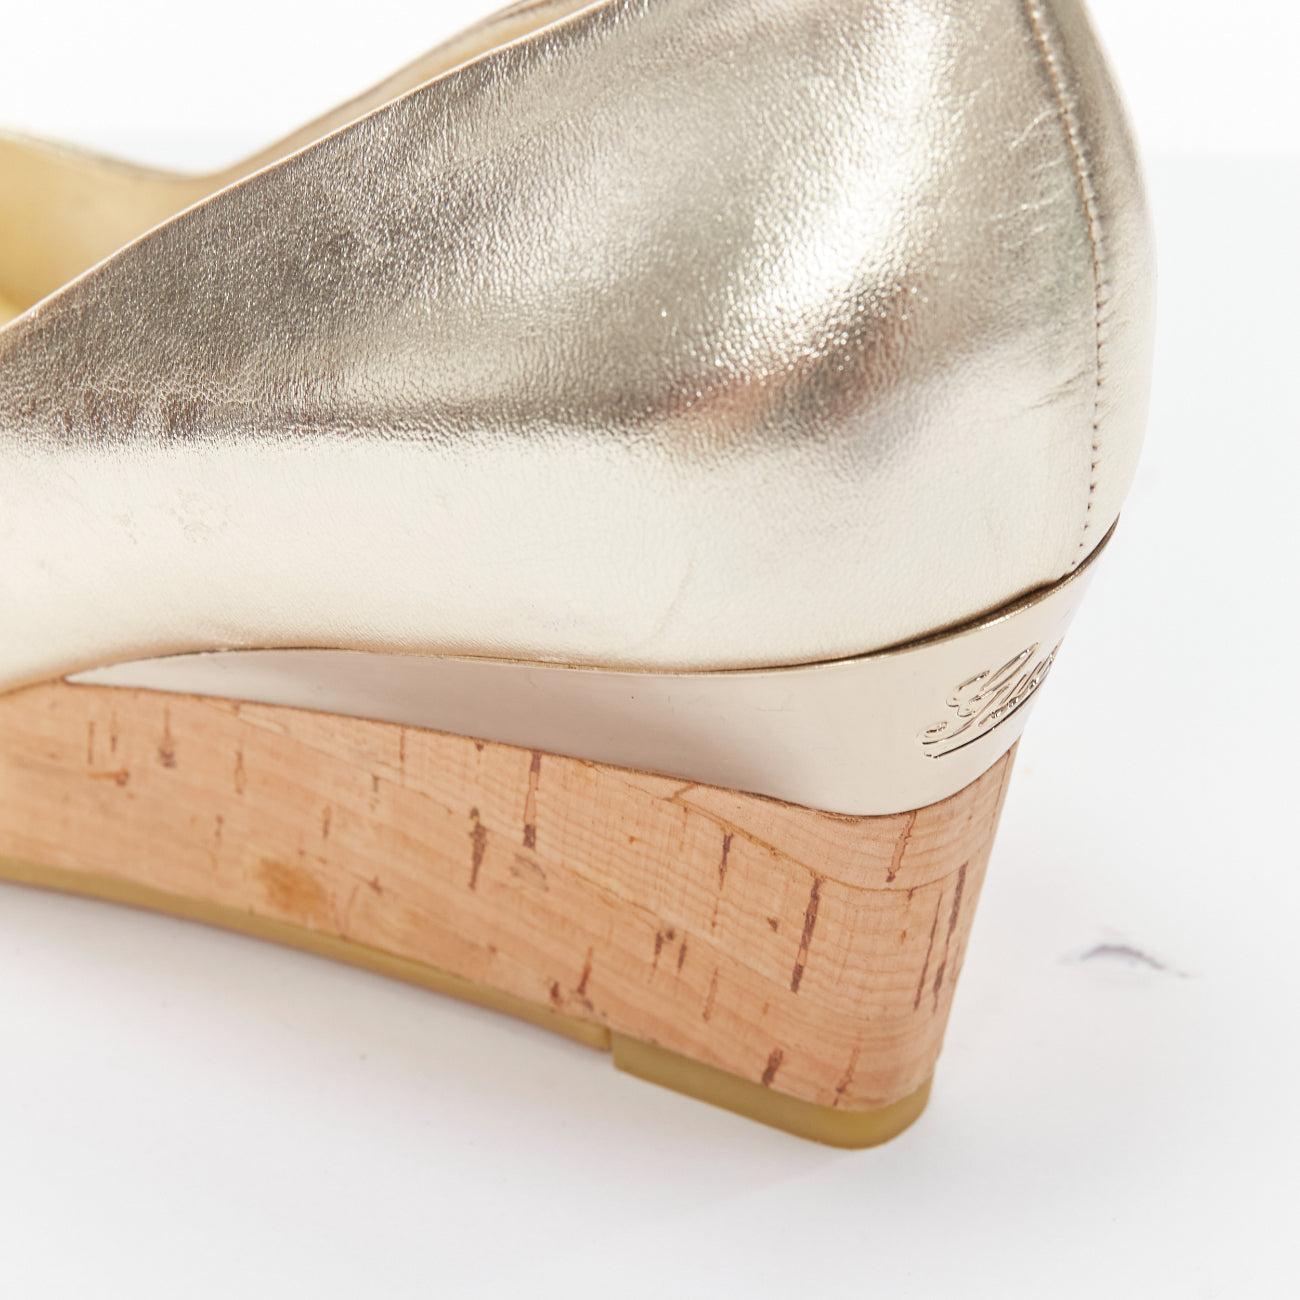 GUCCI metallic gold leather bow open toe cord metal wedge mid heel EU36.5 4